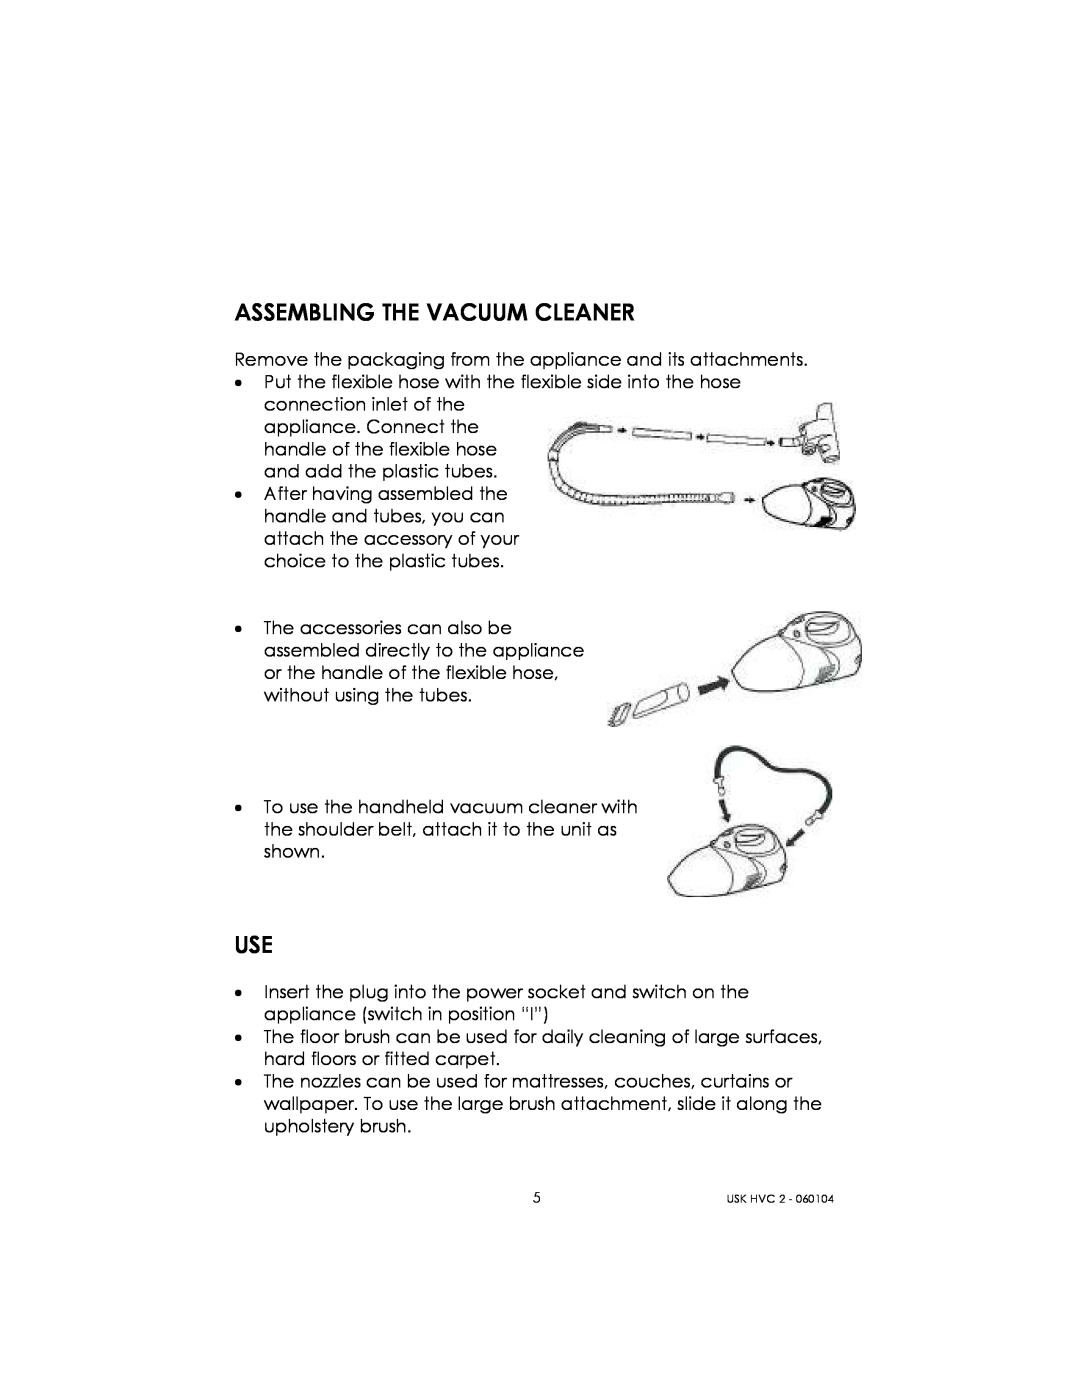 Kalorik USK HVC 2 manual Assembling The Vacuum Cleaner 